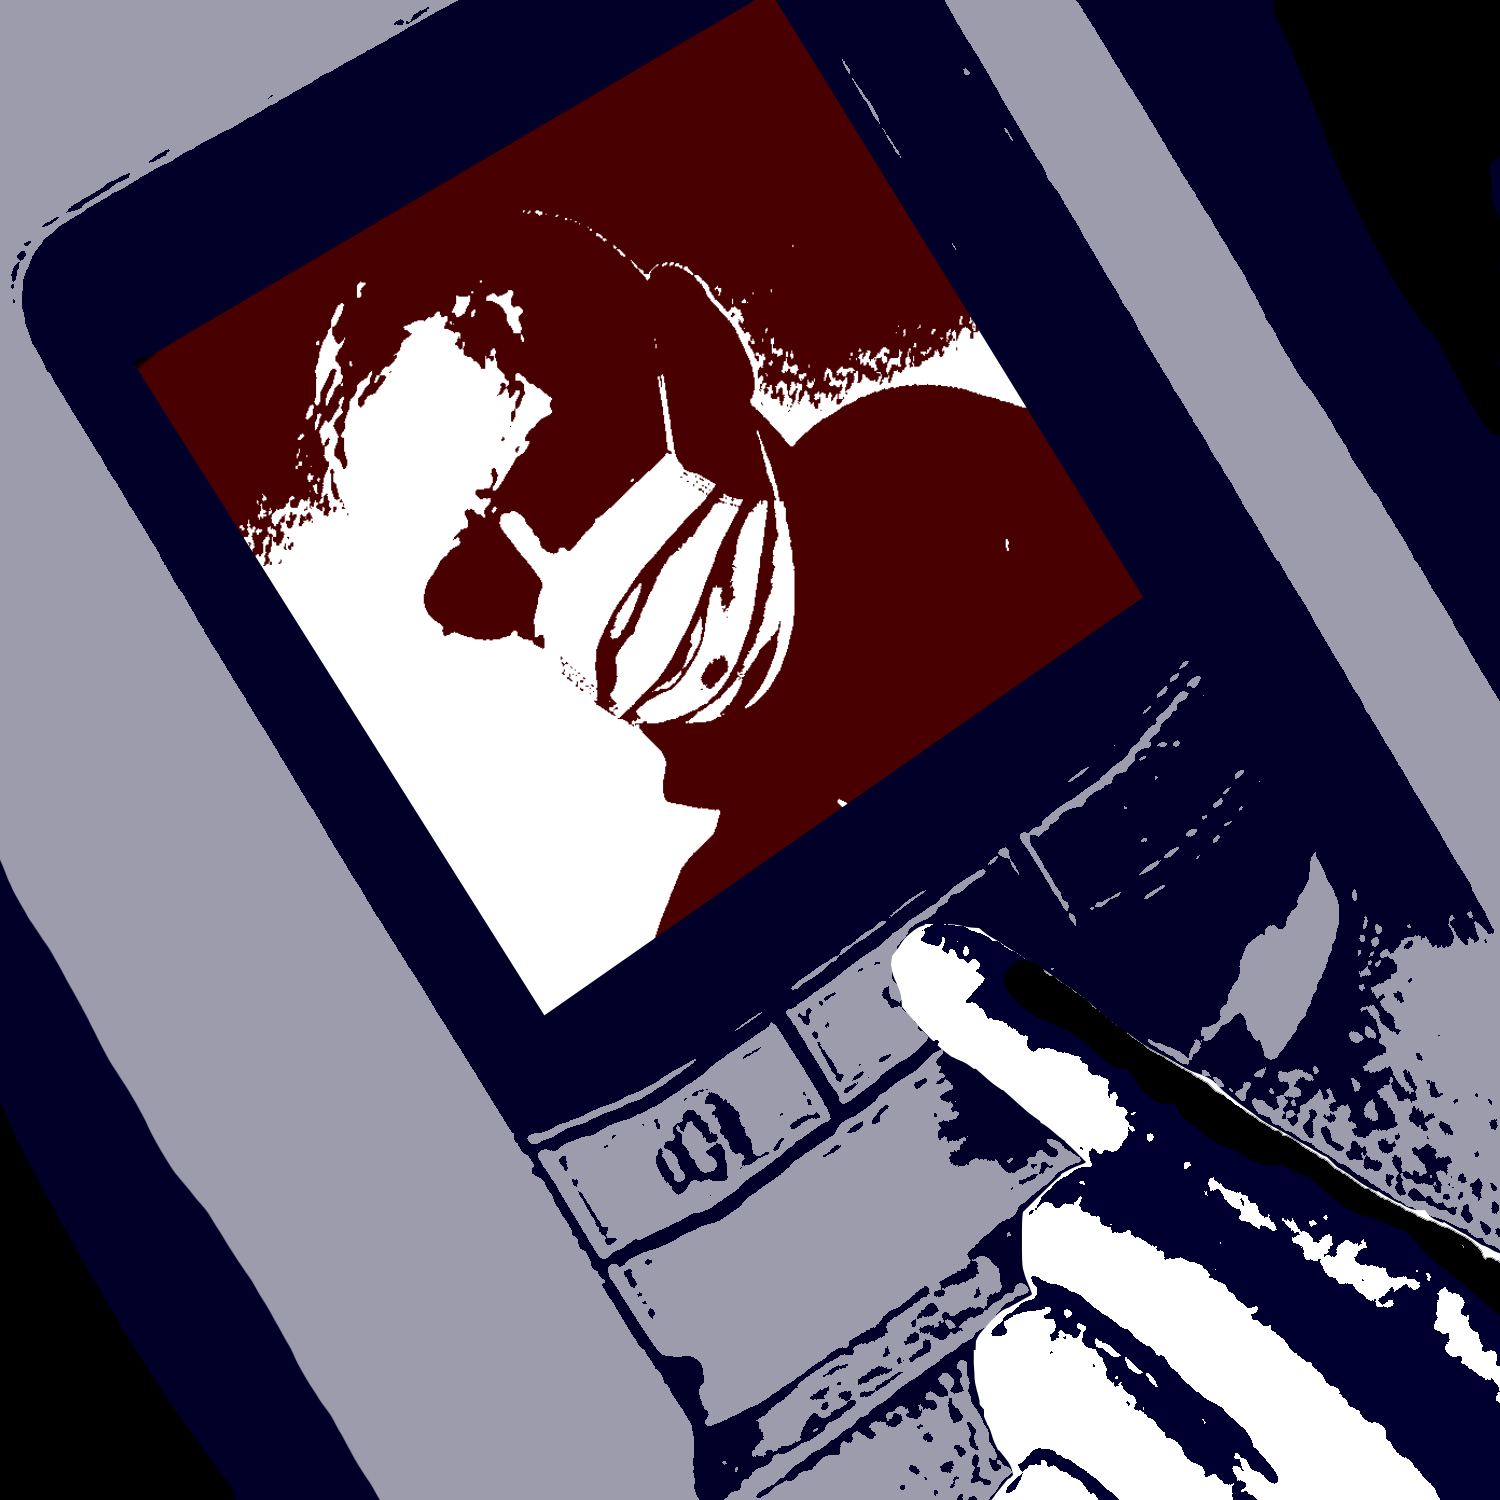 رسم لصورة تظهر على شاشة اتصال داخلية